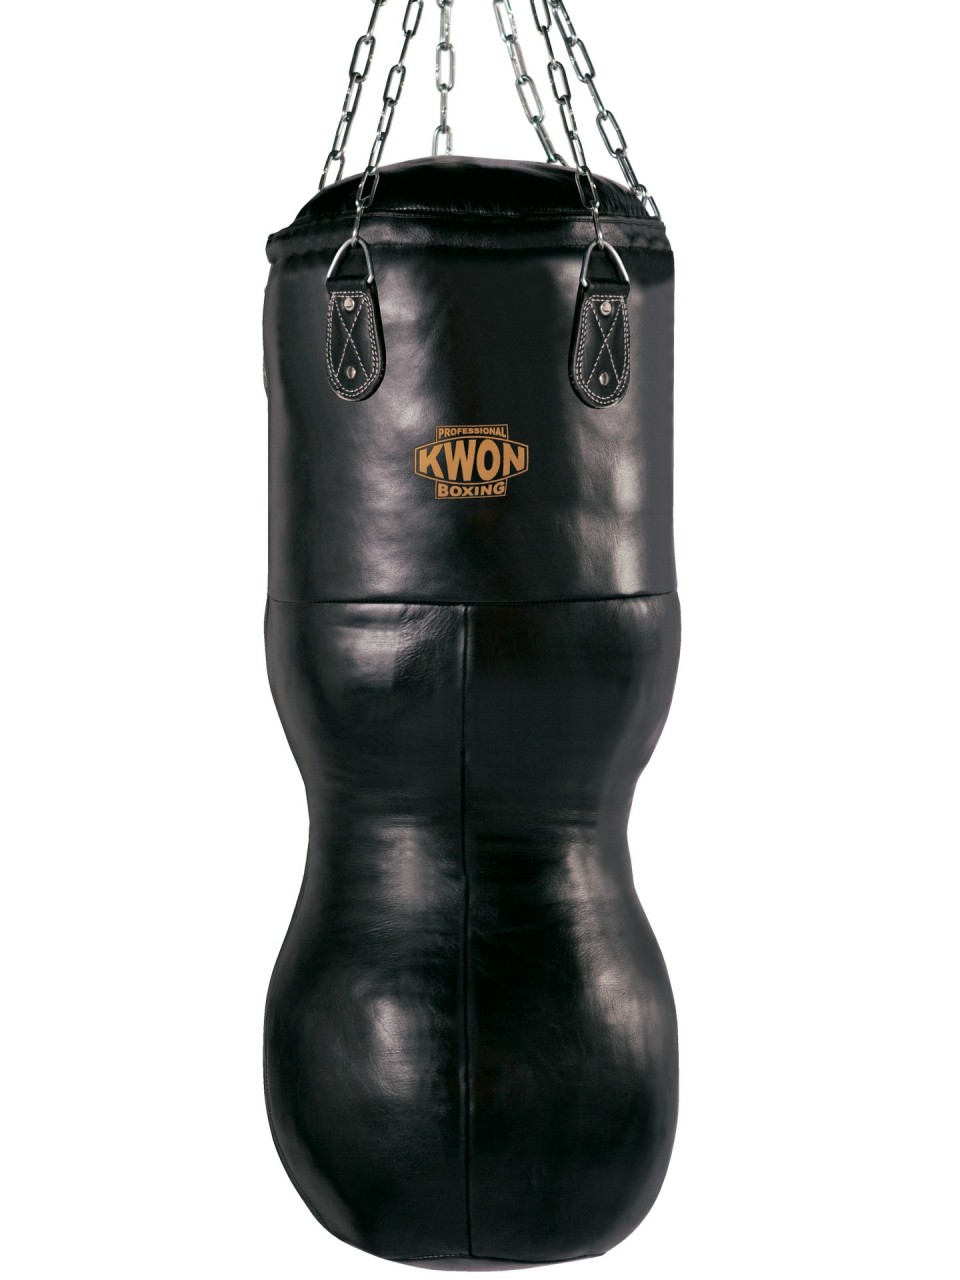 Sac de frappe - RXD Punch bag 180x35cm - 60kg